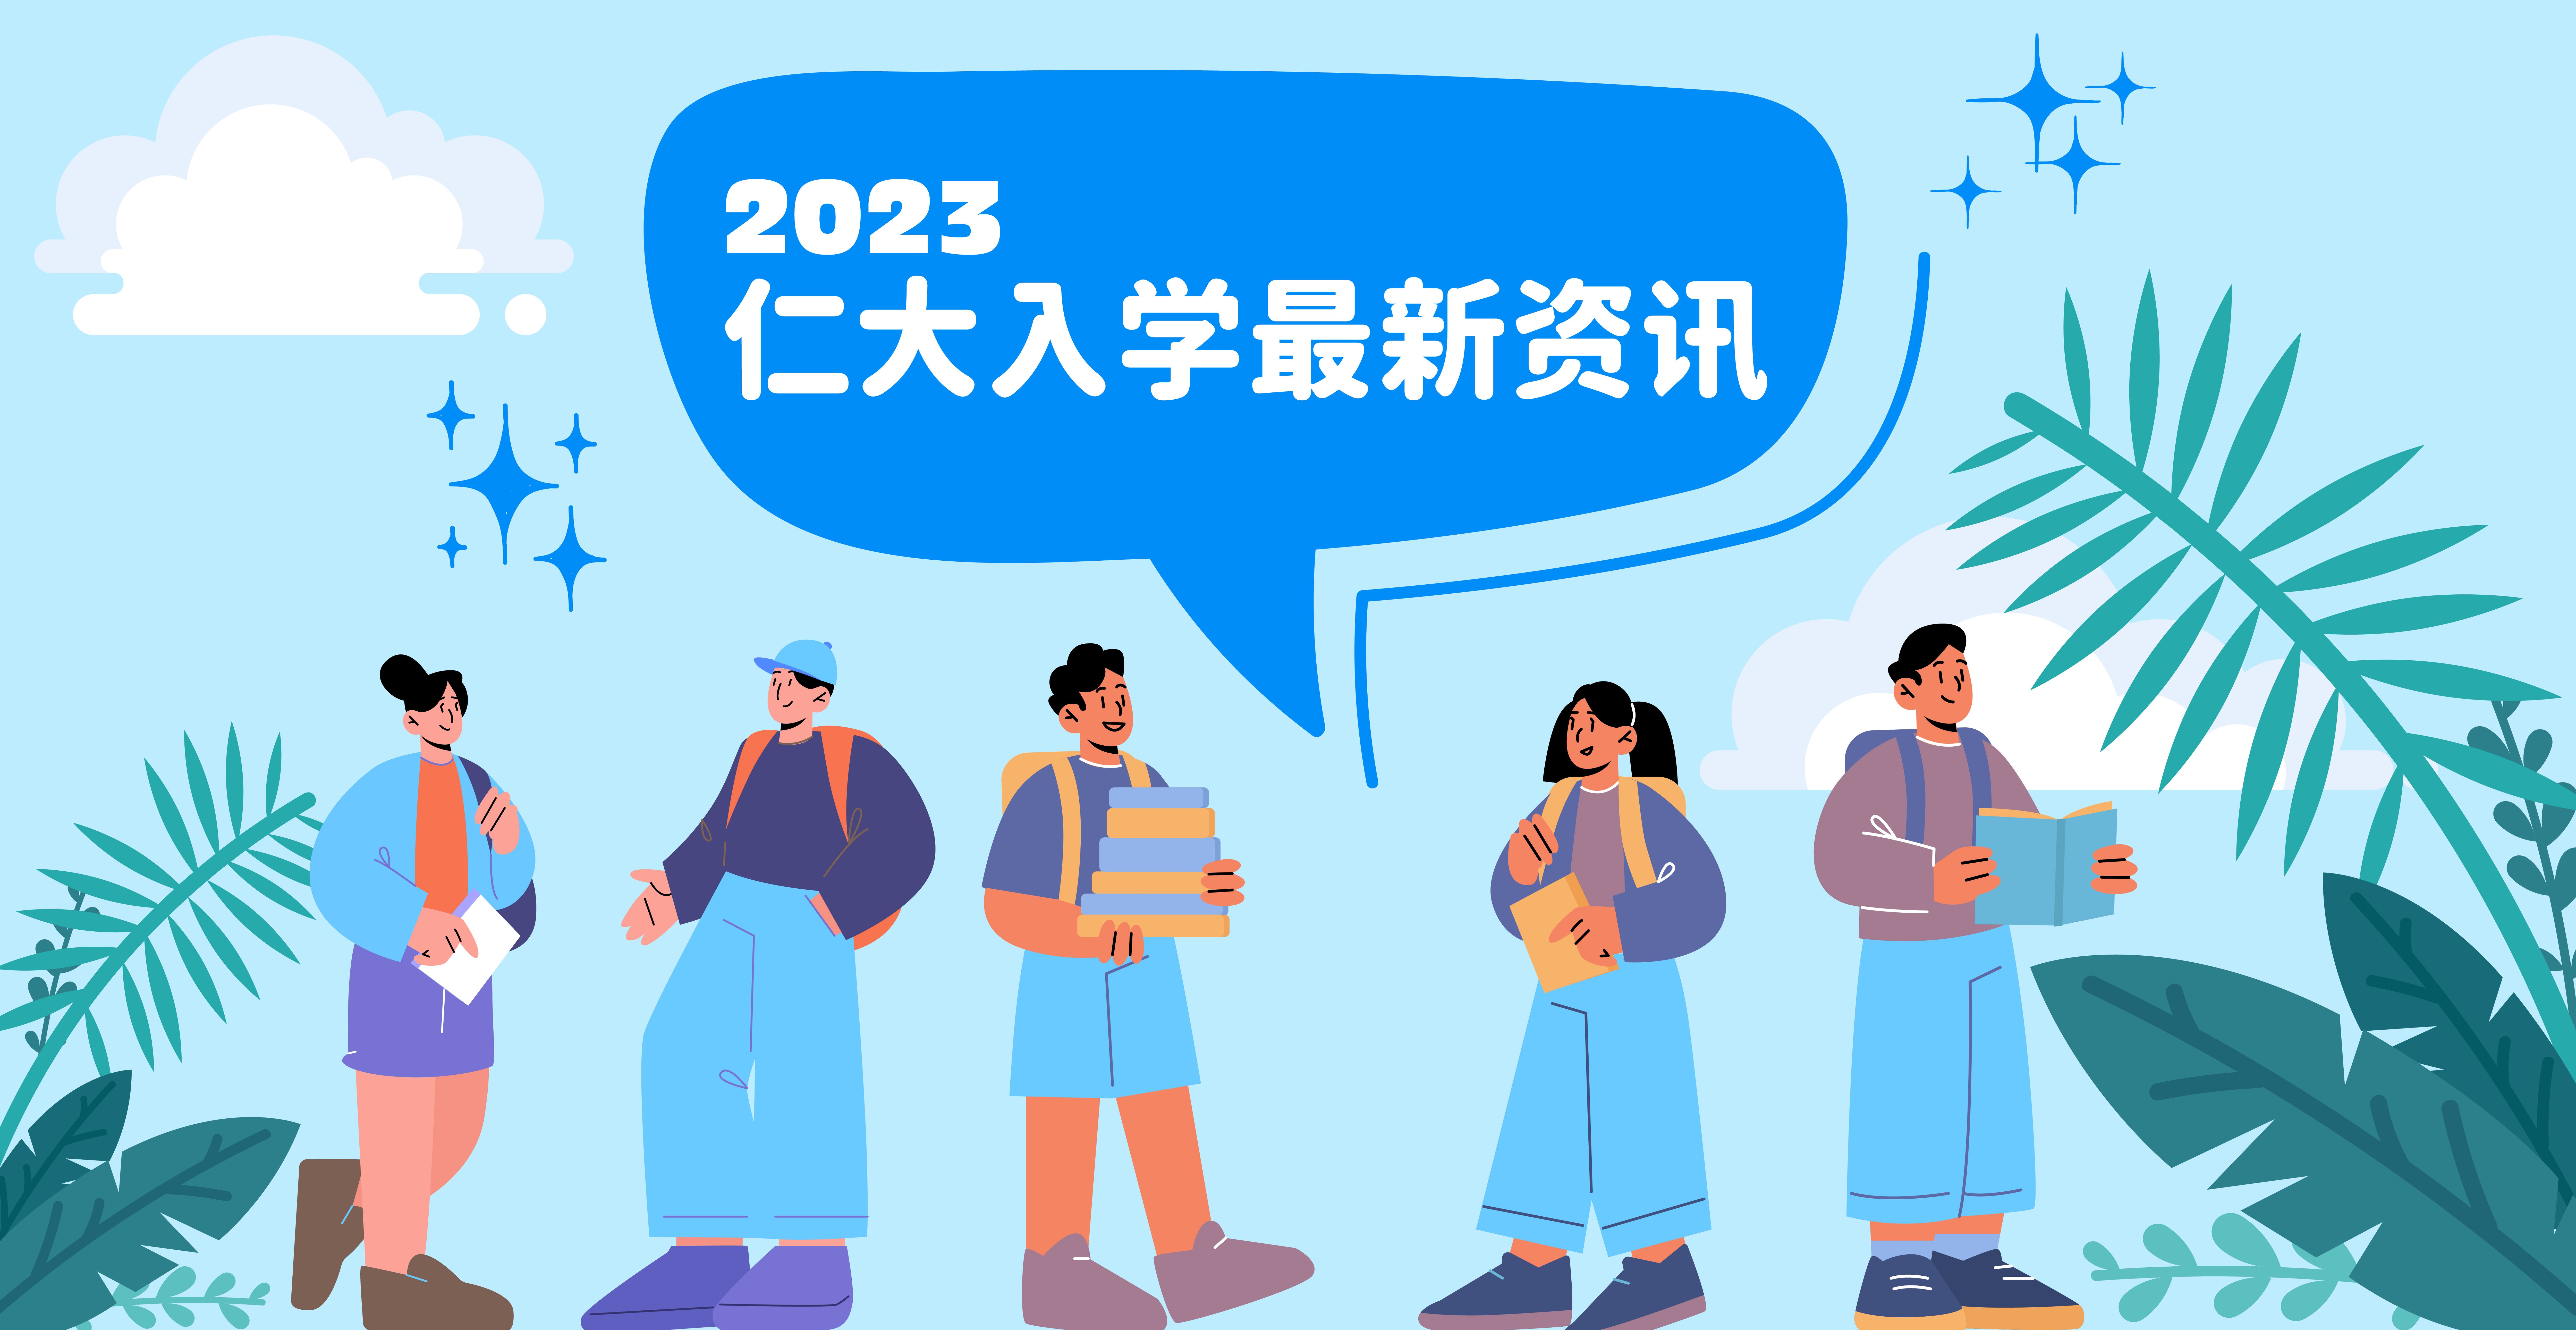 2023/24树仁大学入学最新信息